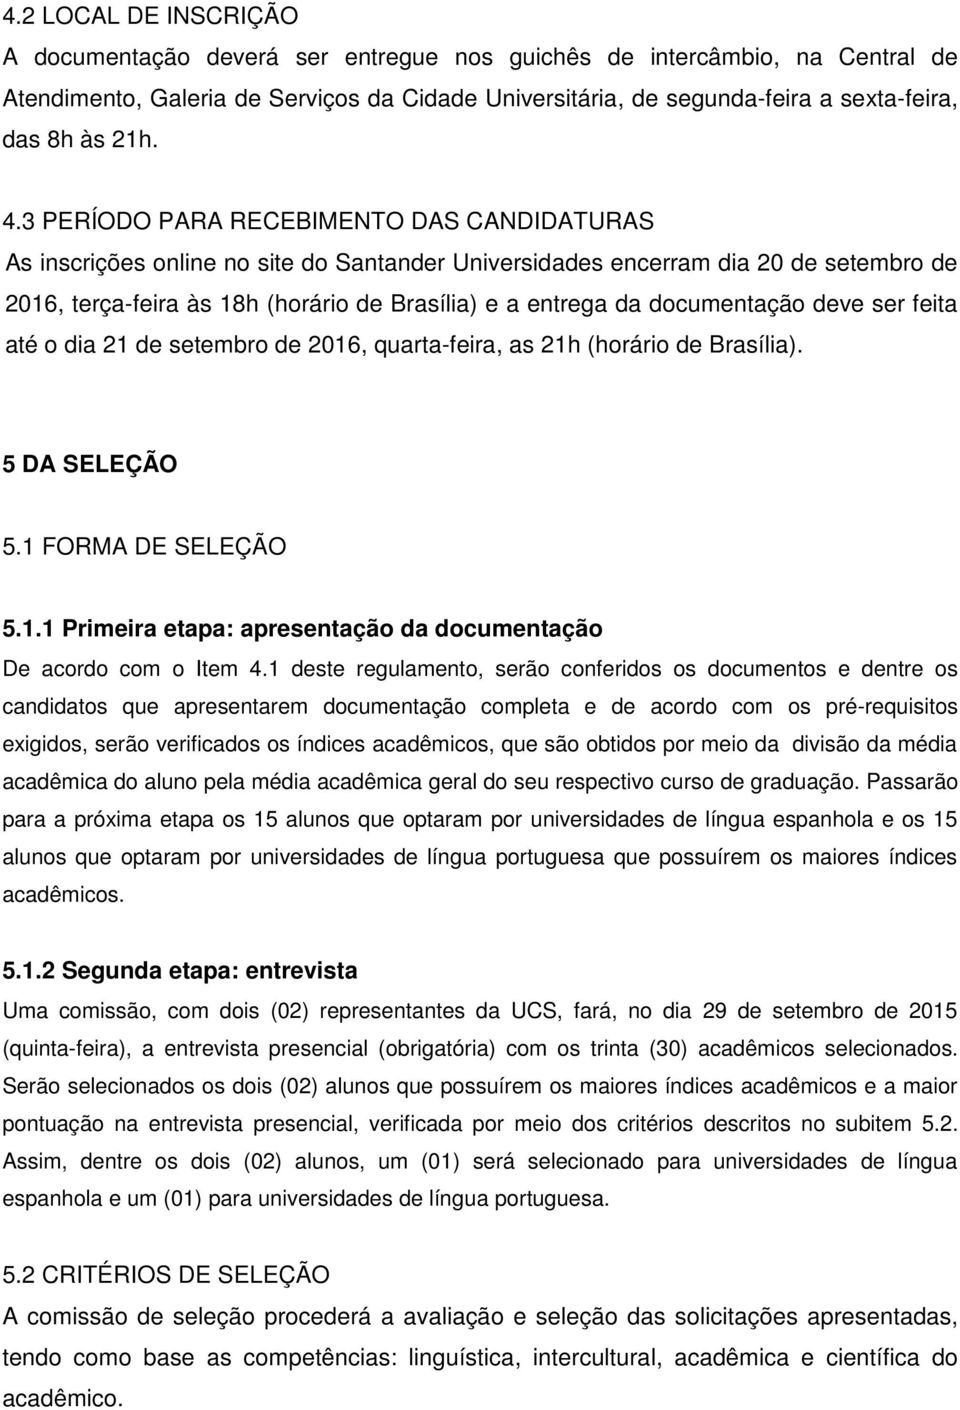 3 PERÍODO PARA RECEBIMENTO DAS CANDIDATURAS As inscrições online no site do Santander Universidades encerram dia 20 de setembro de 2016, terça-feira às 18h (horário de Brasília) e a entrega da